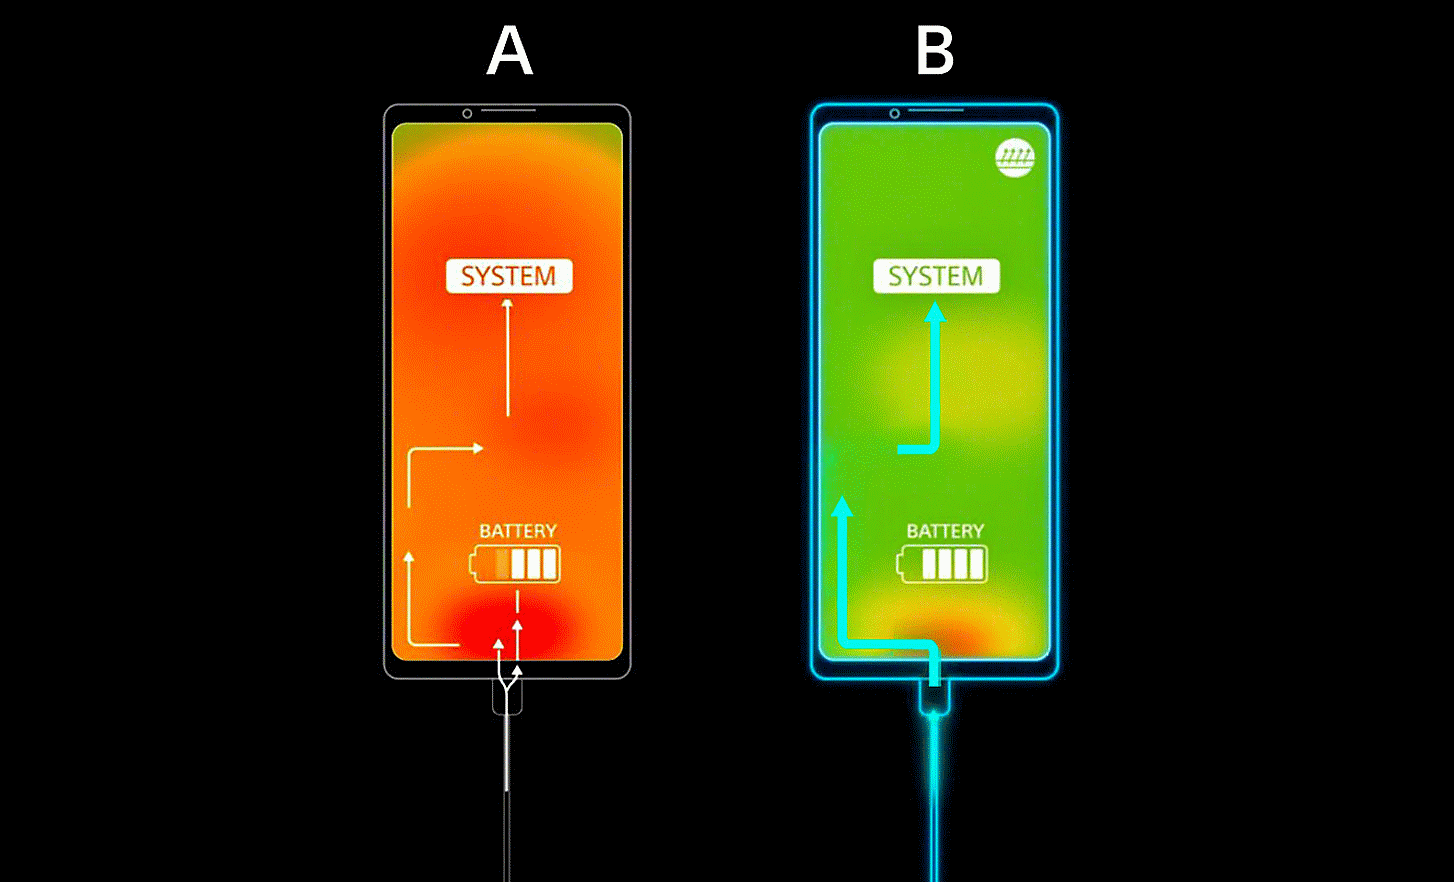 Điện thoại A trên nền màu cam với các mũi tên chỉ đến pin và hệ thống, Điện thoại B trên nền màu xanh lục với các mũi tên chỉ đến hệ thống